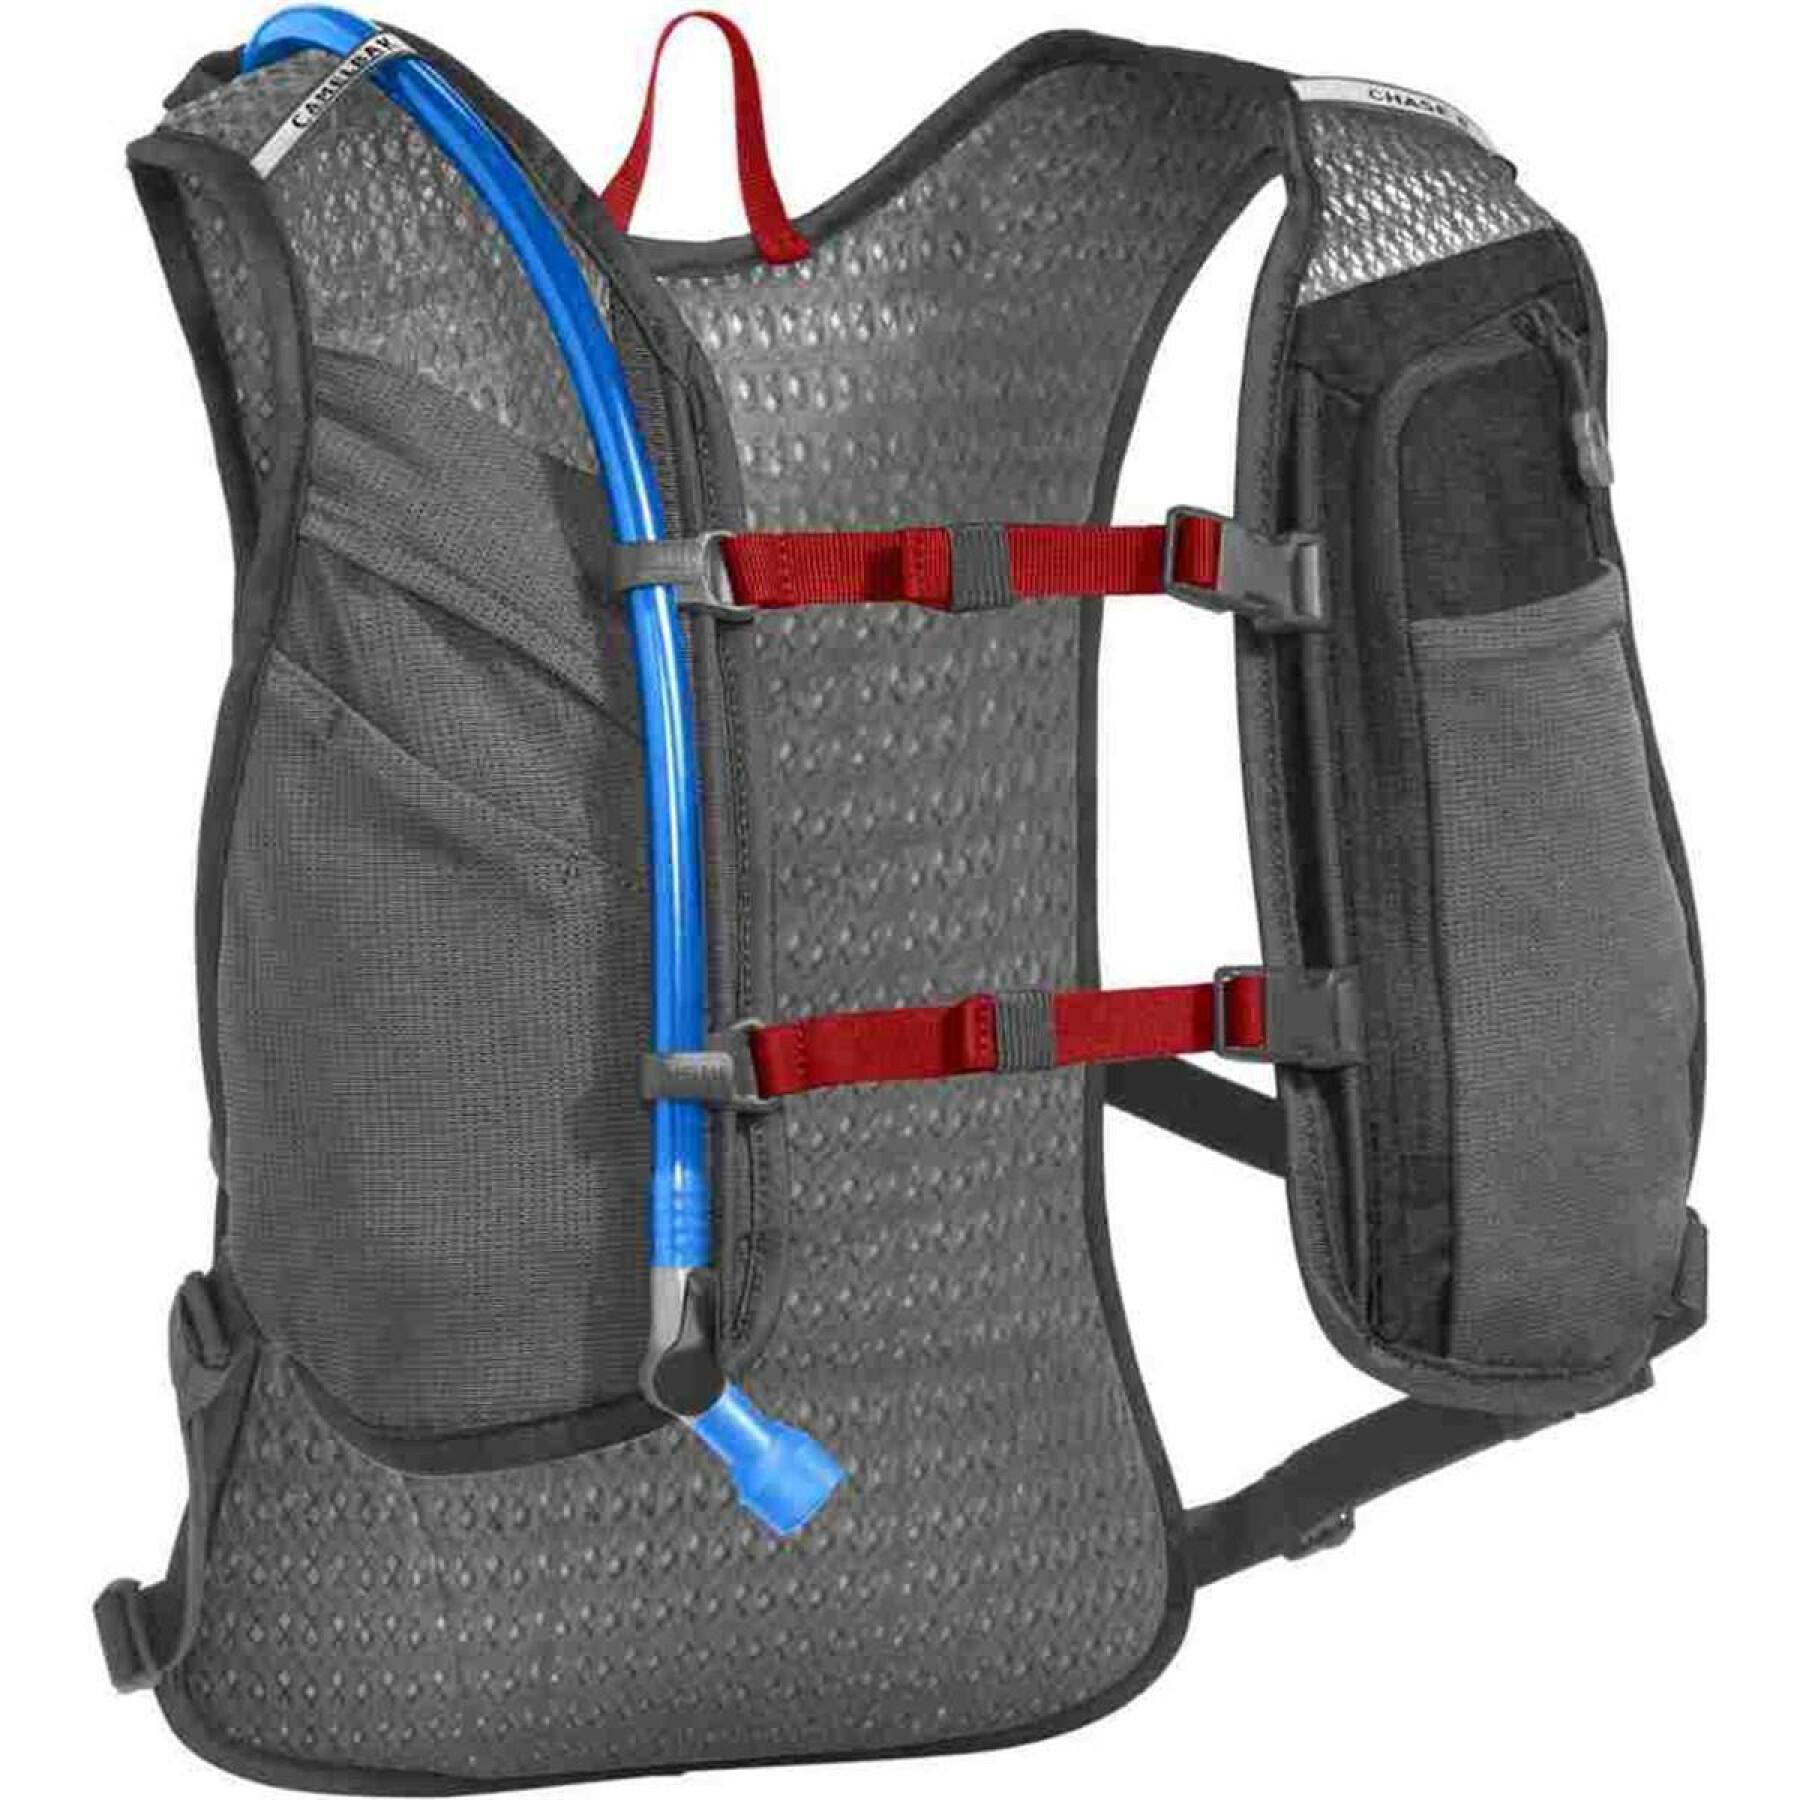 Zaino edizione limitata fusion water bag Camelbak Chase 8 Vest